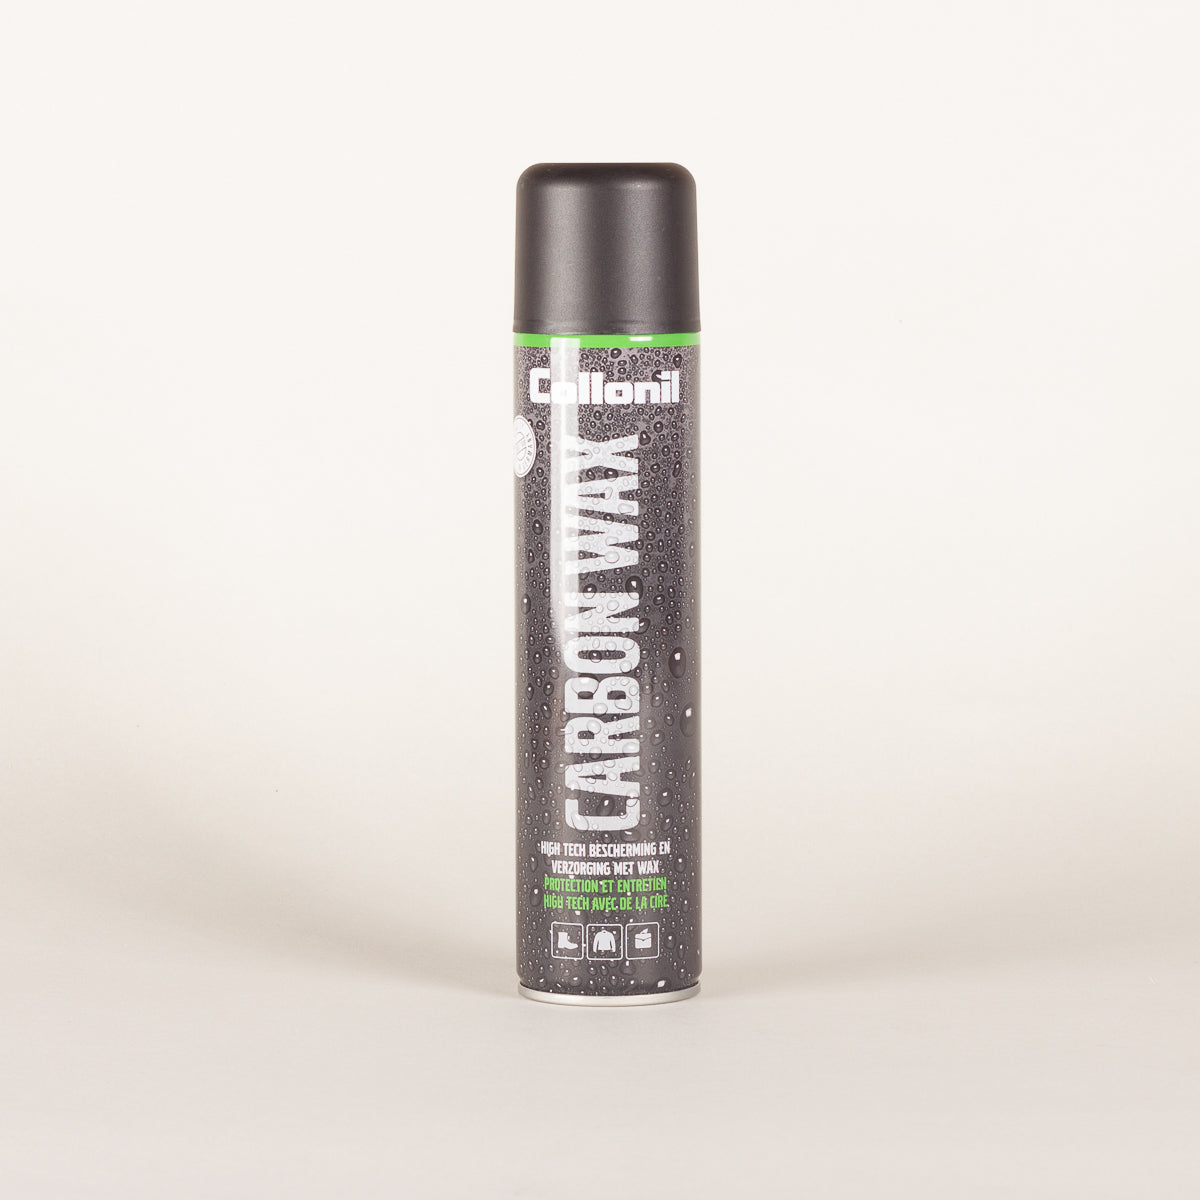 Aarzelen voor mij Kangoeroe Collonil Carbon Wax spray — Distinctly Different